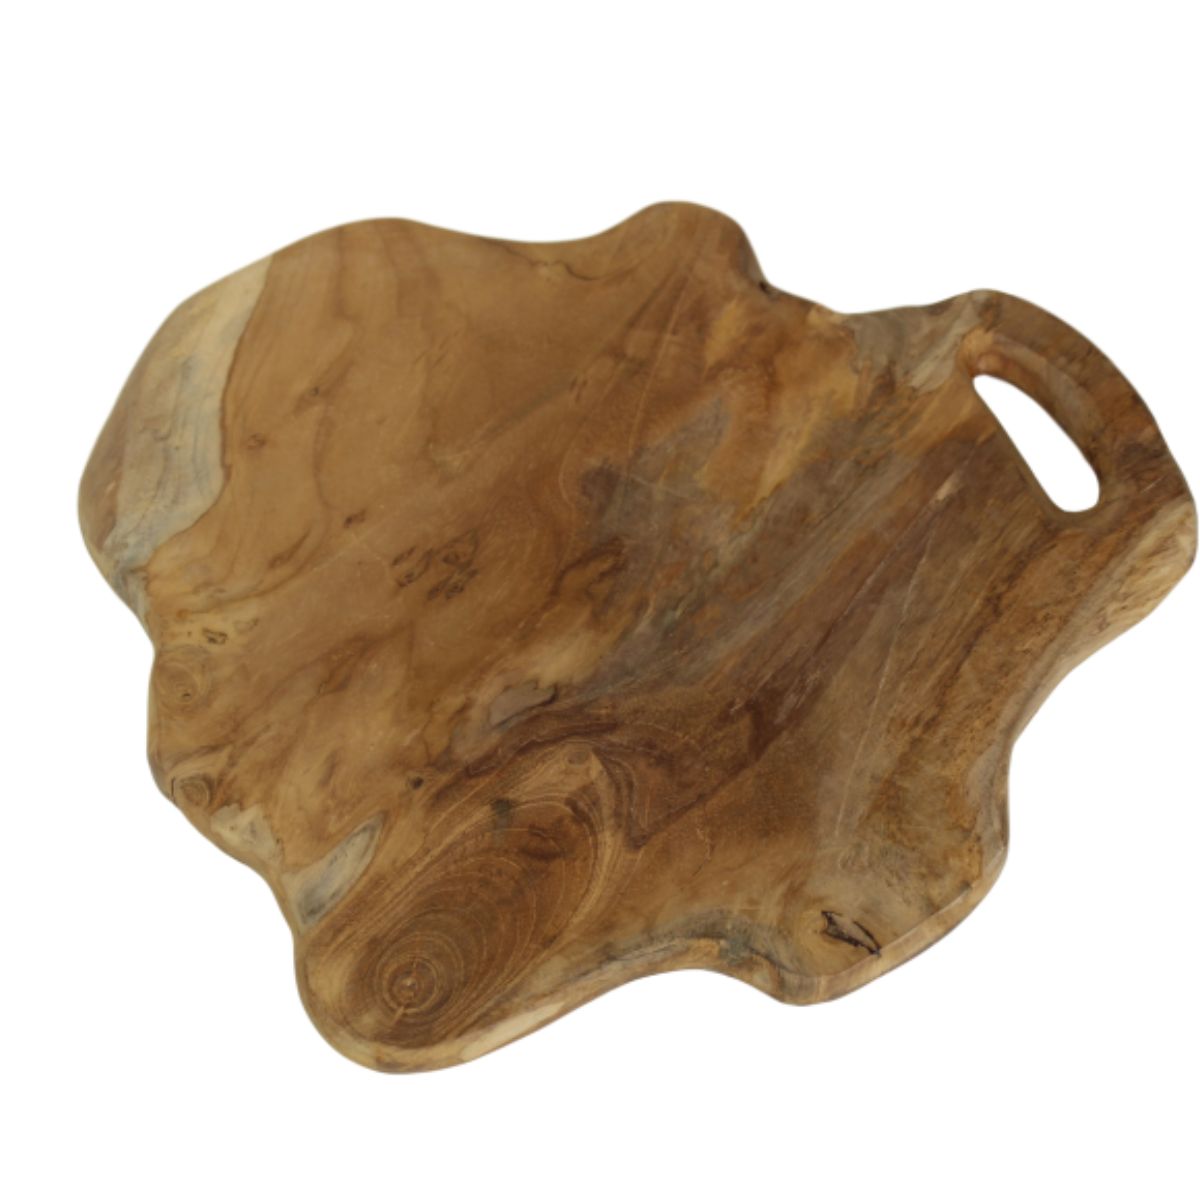 Serveerplank Medium van Wood Selections - Natuurlijke elegantie voor je keukeninterieur.